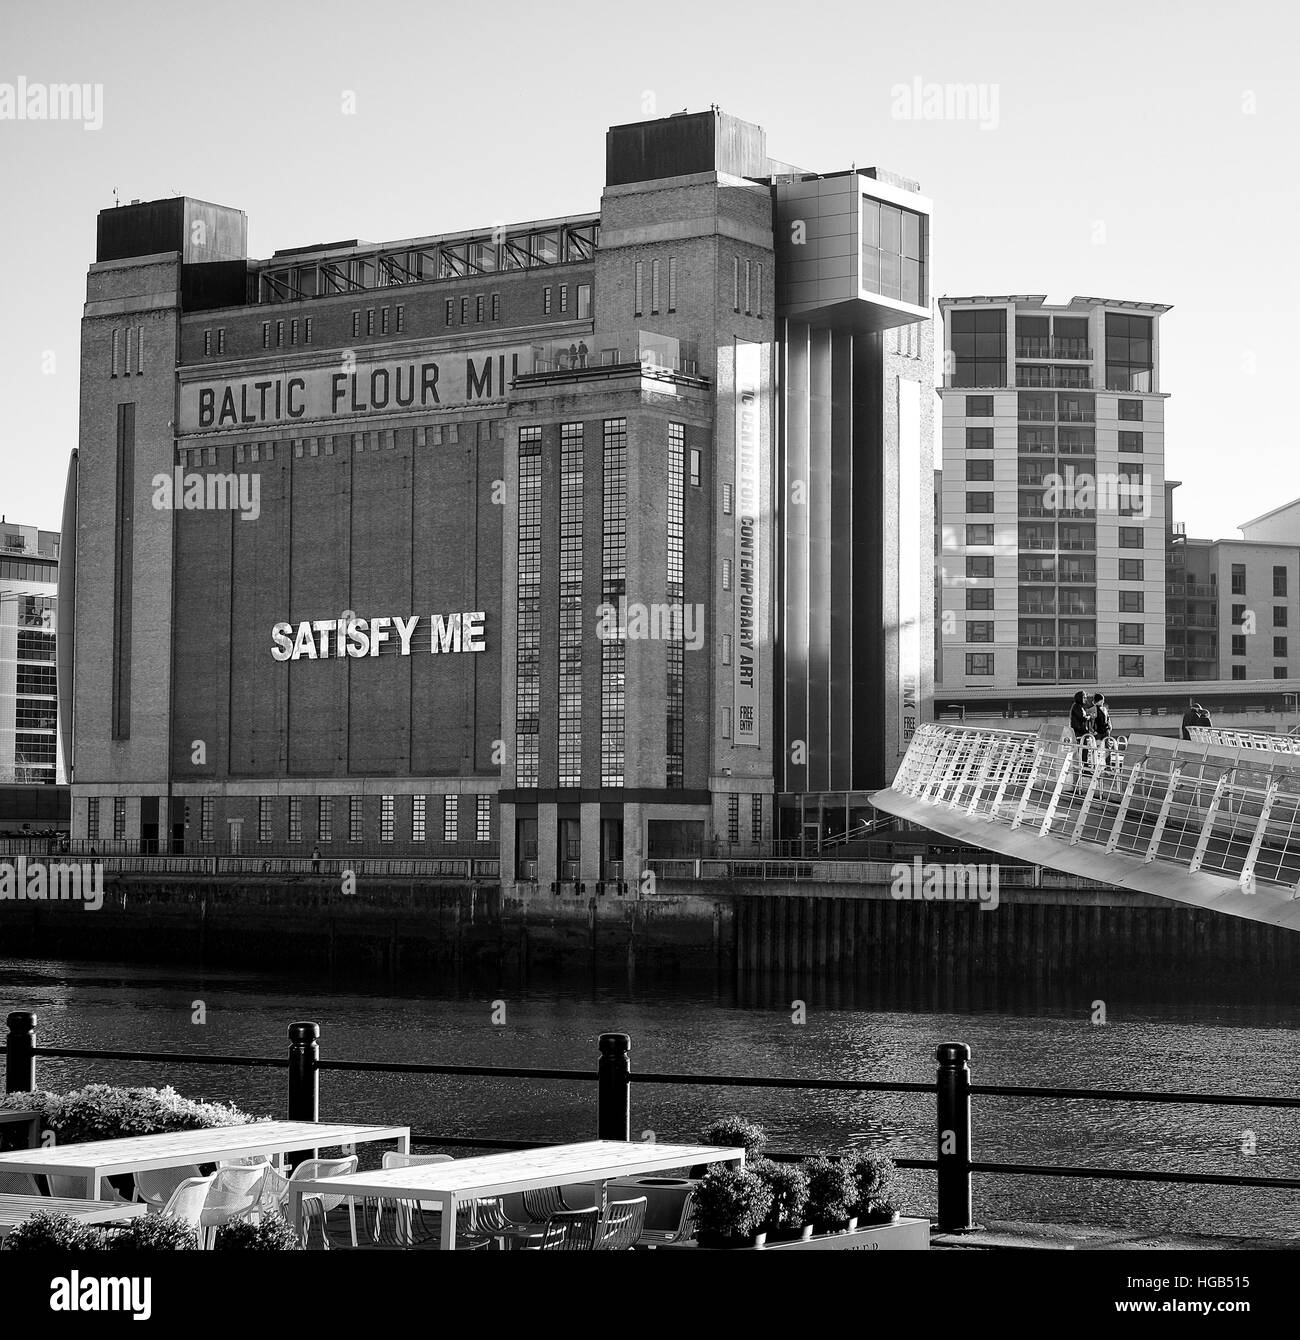 Galerie de la baltique et, Gateshead Millennium Bridge Banque D'Images